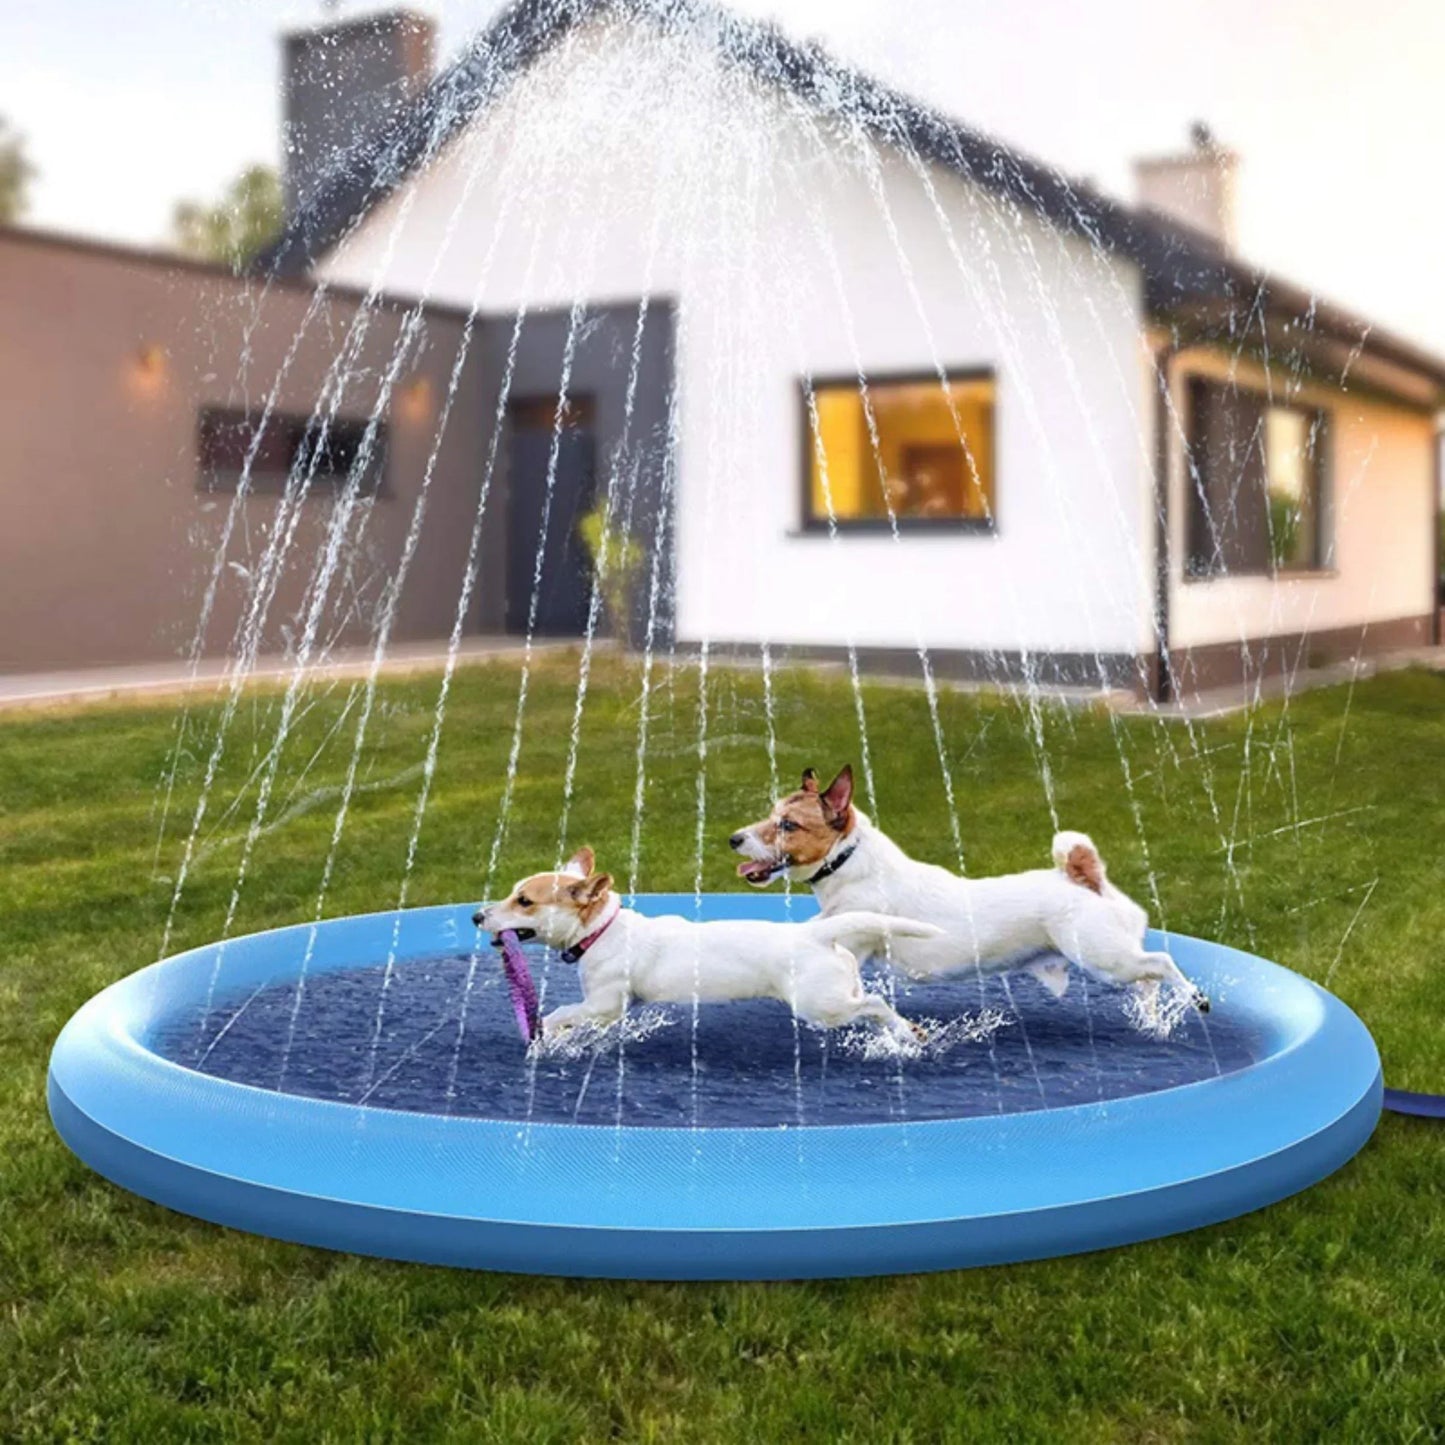 DogSplash - Refreshing Dog Sprinkler